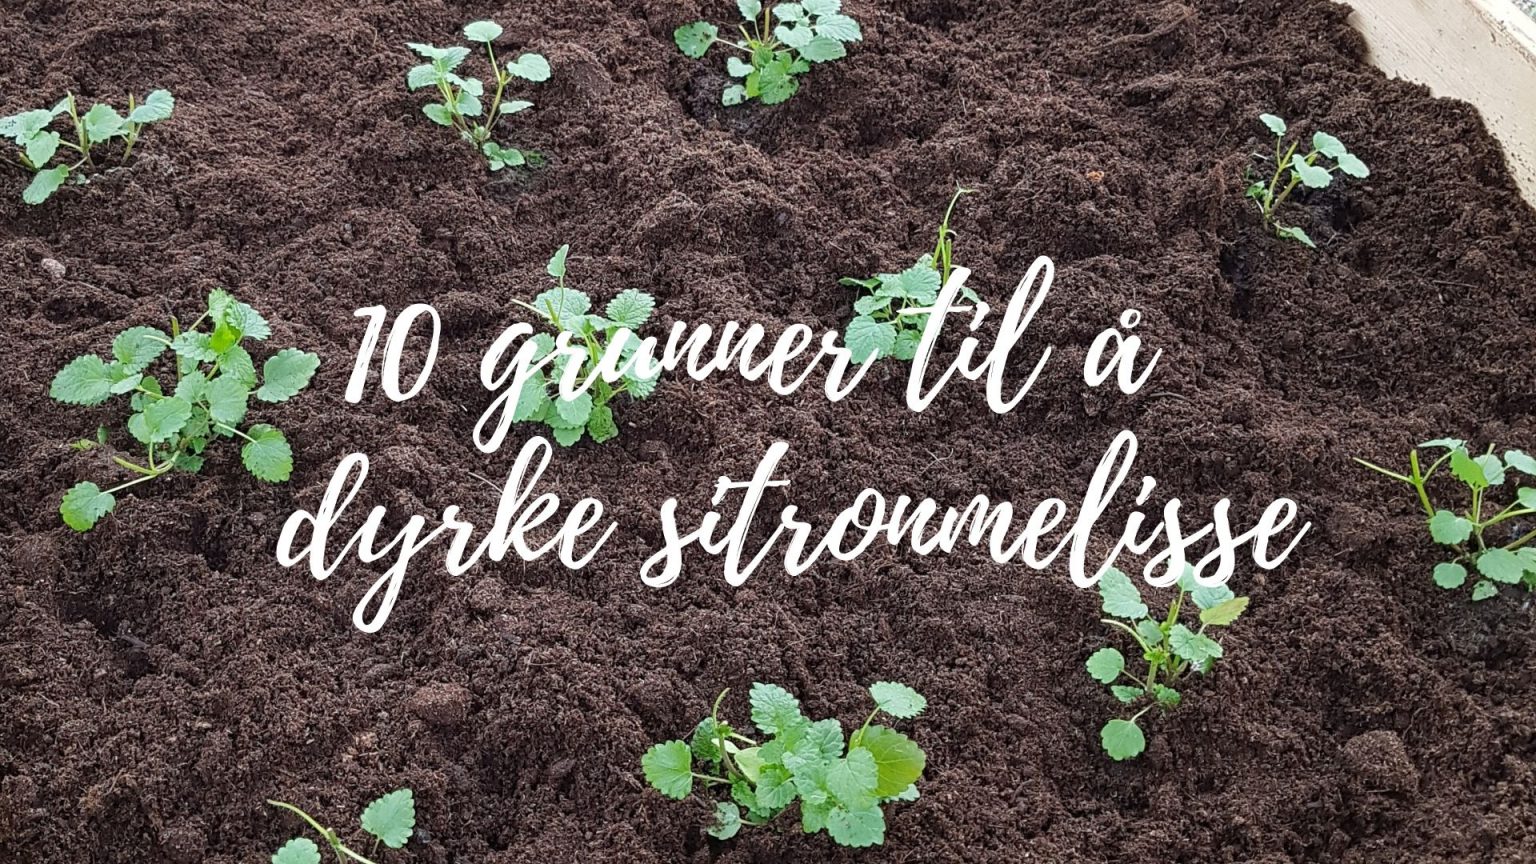 10 grunner til å dyrke Sitronmelisse